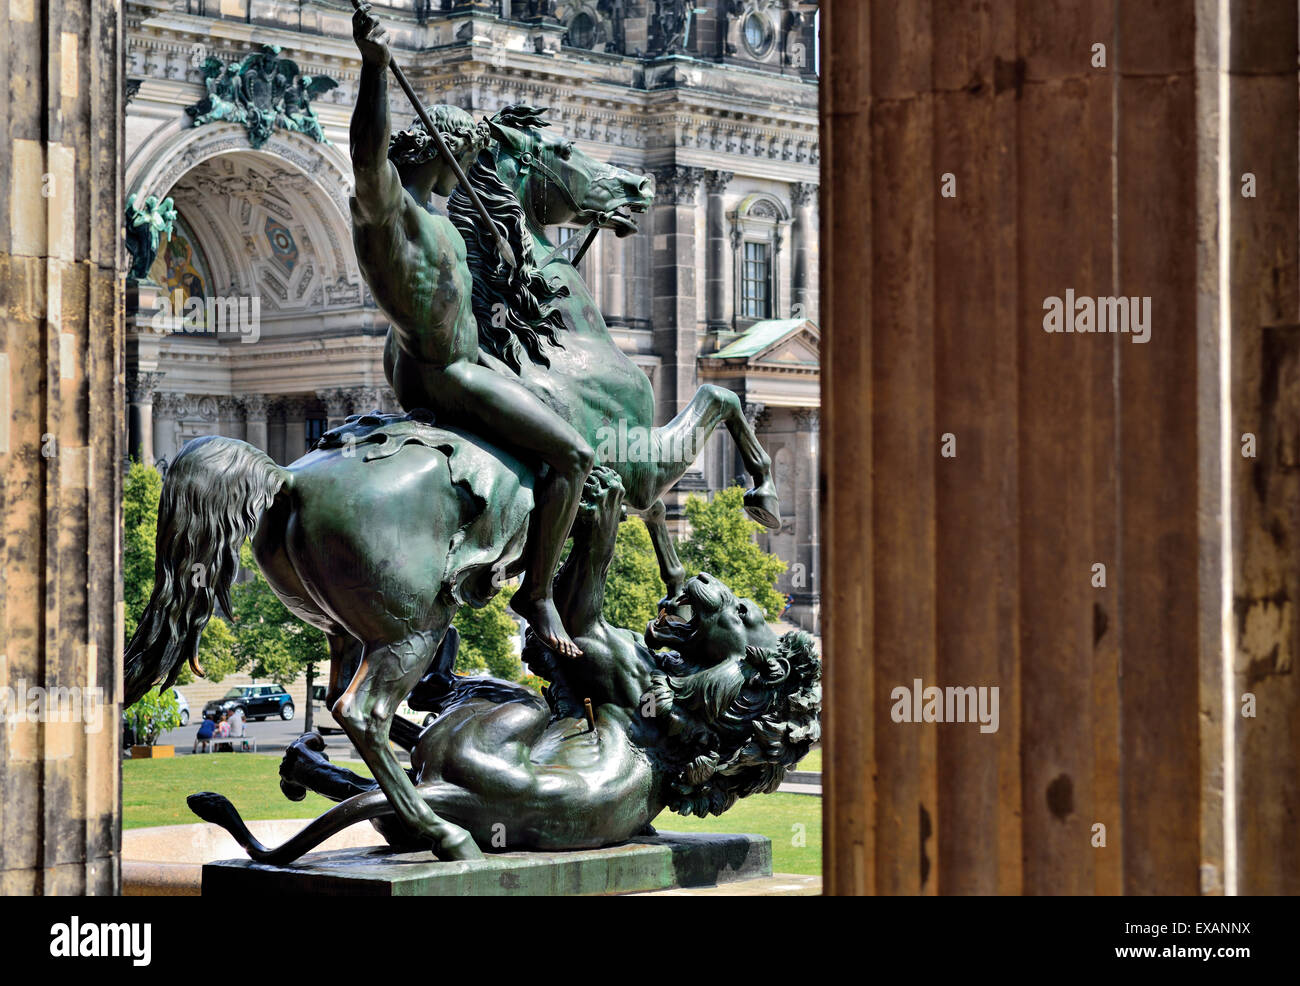 Germania Berlino: scultura equestre 'Lion fighter' all'entrata del vecchio museo Foto Stock